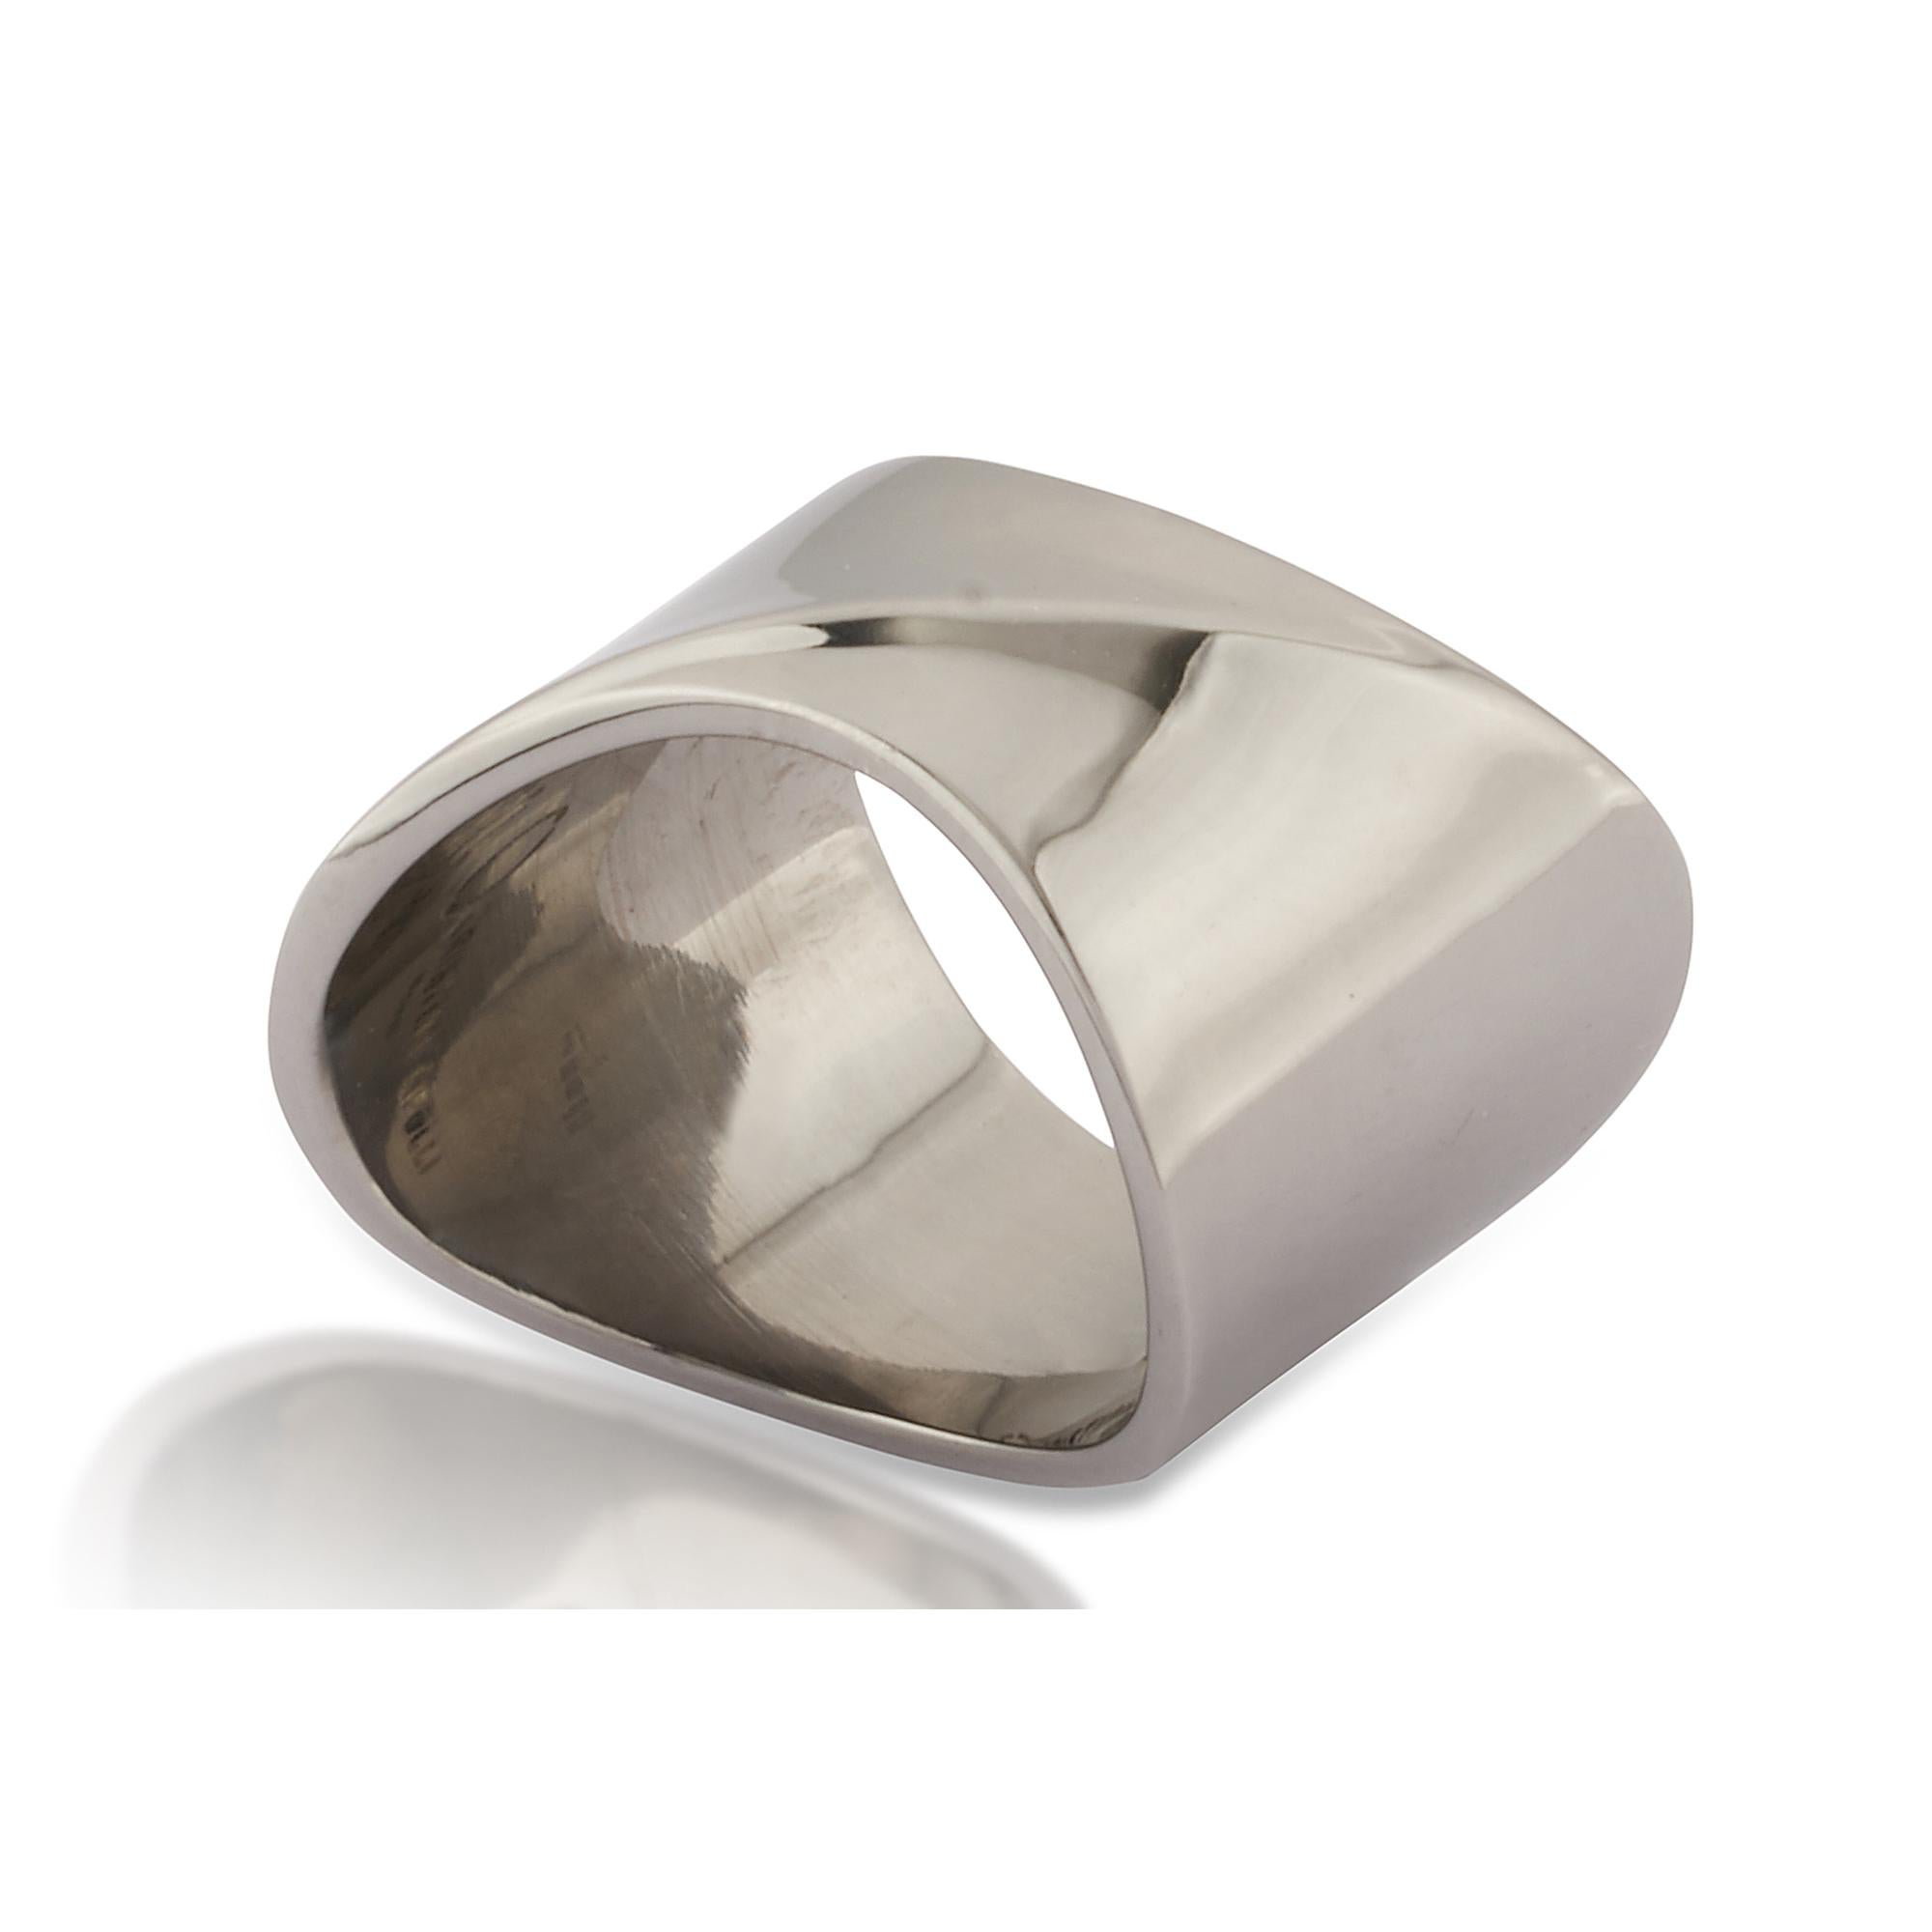 Unisex-Ring mit minimalistischem und kühnem Design.
Größe UK M - US 6 1/2 auf Lager, weitere Größen auf Anfrage erhältlich, Sonderanfertigungen sind vom Umtausch ausgeschlossen.
Perfekt als Einzelring oder horizontal gestapelt mit mehreren Ringen